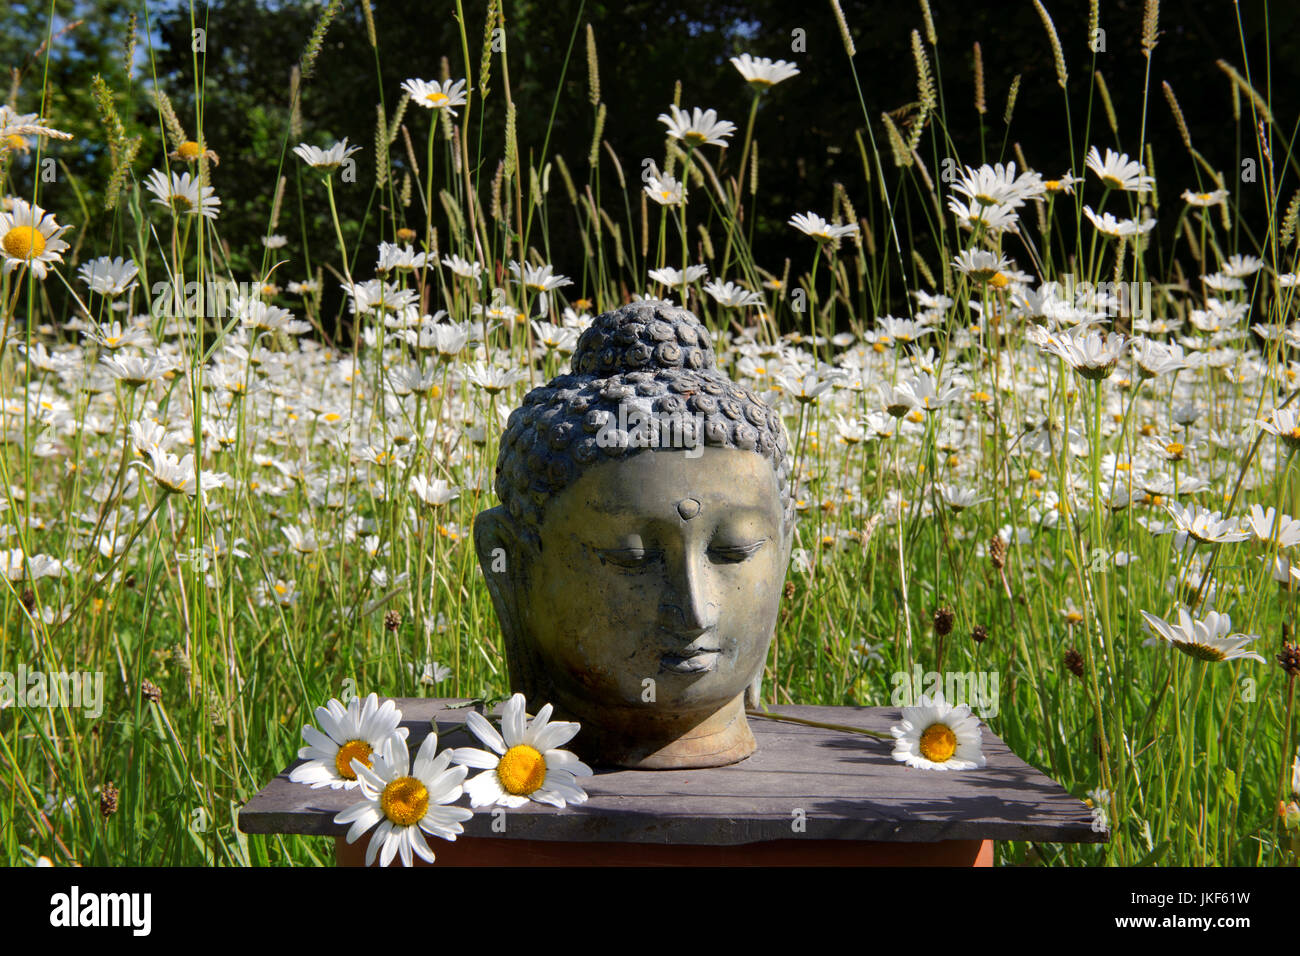 Buddha-Kopf auf informelle Altar in Wiese mit Gänseblümchen Ochsen-Auge. Garten-Schrein, Juni, Sommer Stockfoto